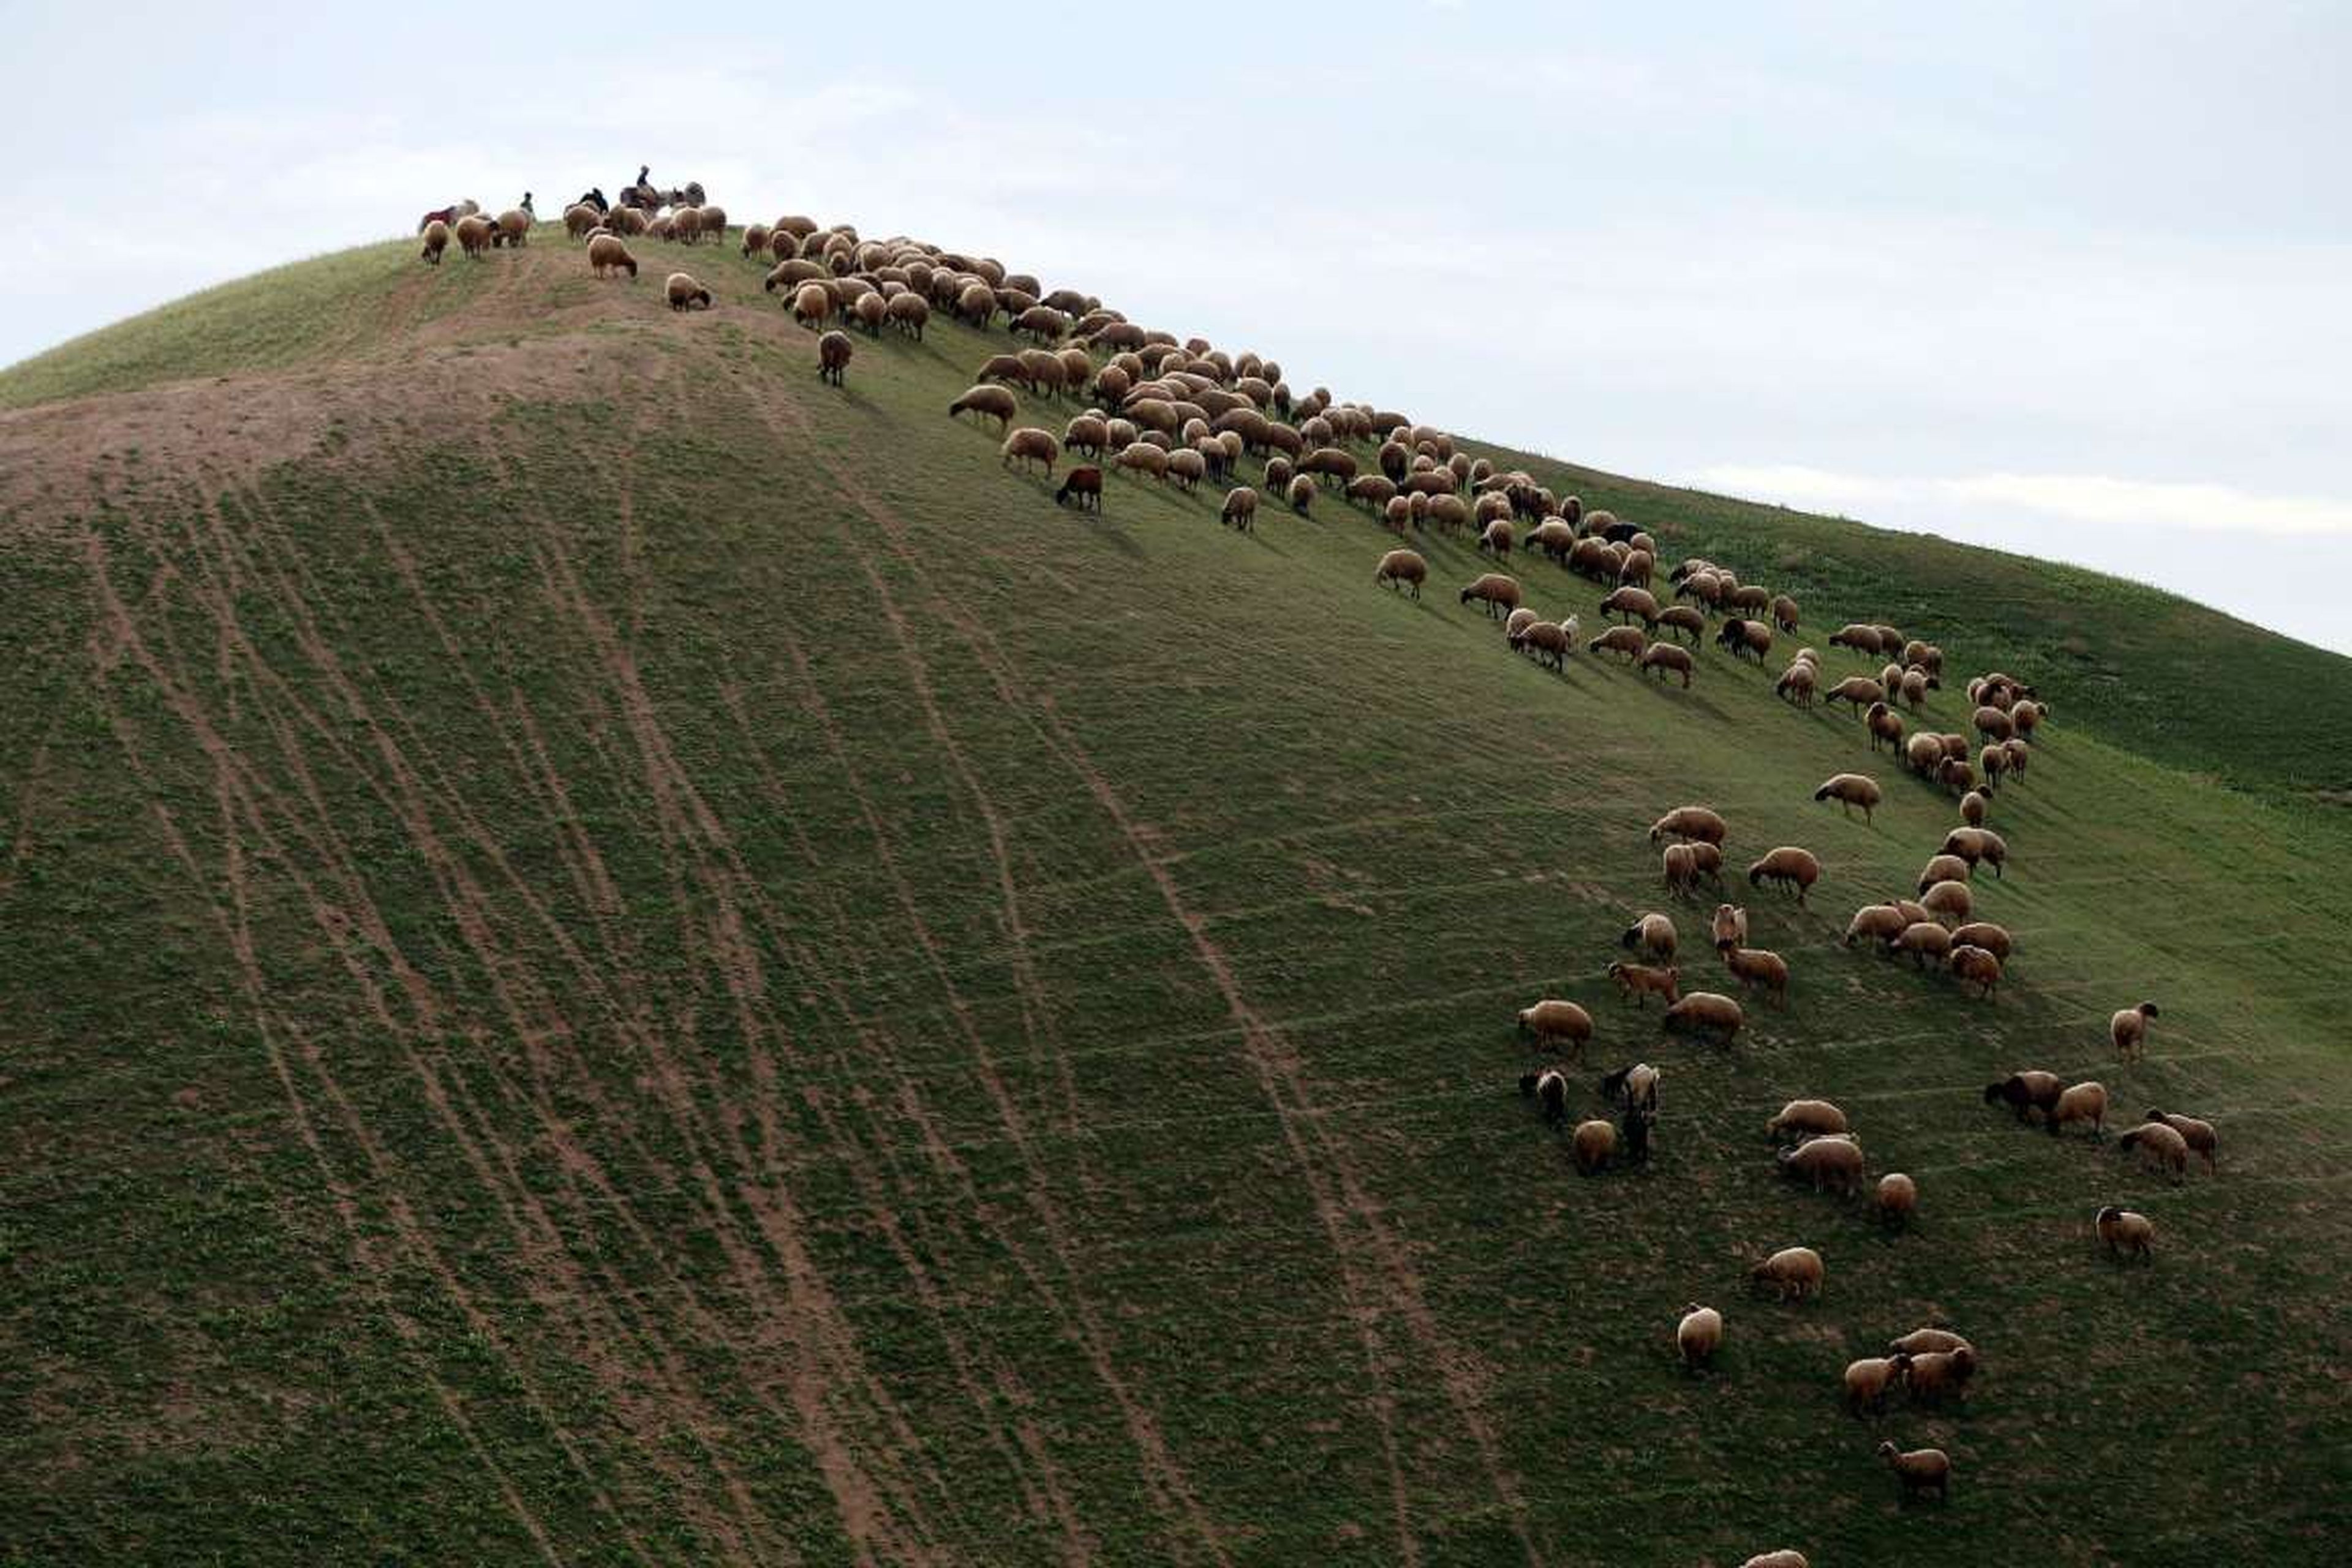 Un rebaño de ovejas palestinas en el desierto de Judea de Israel.